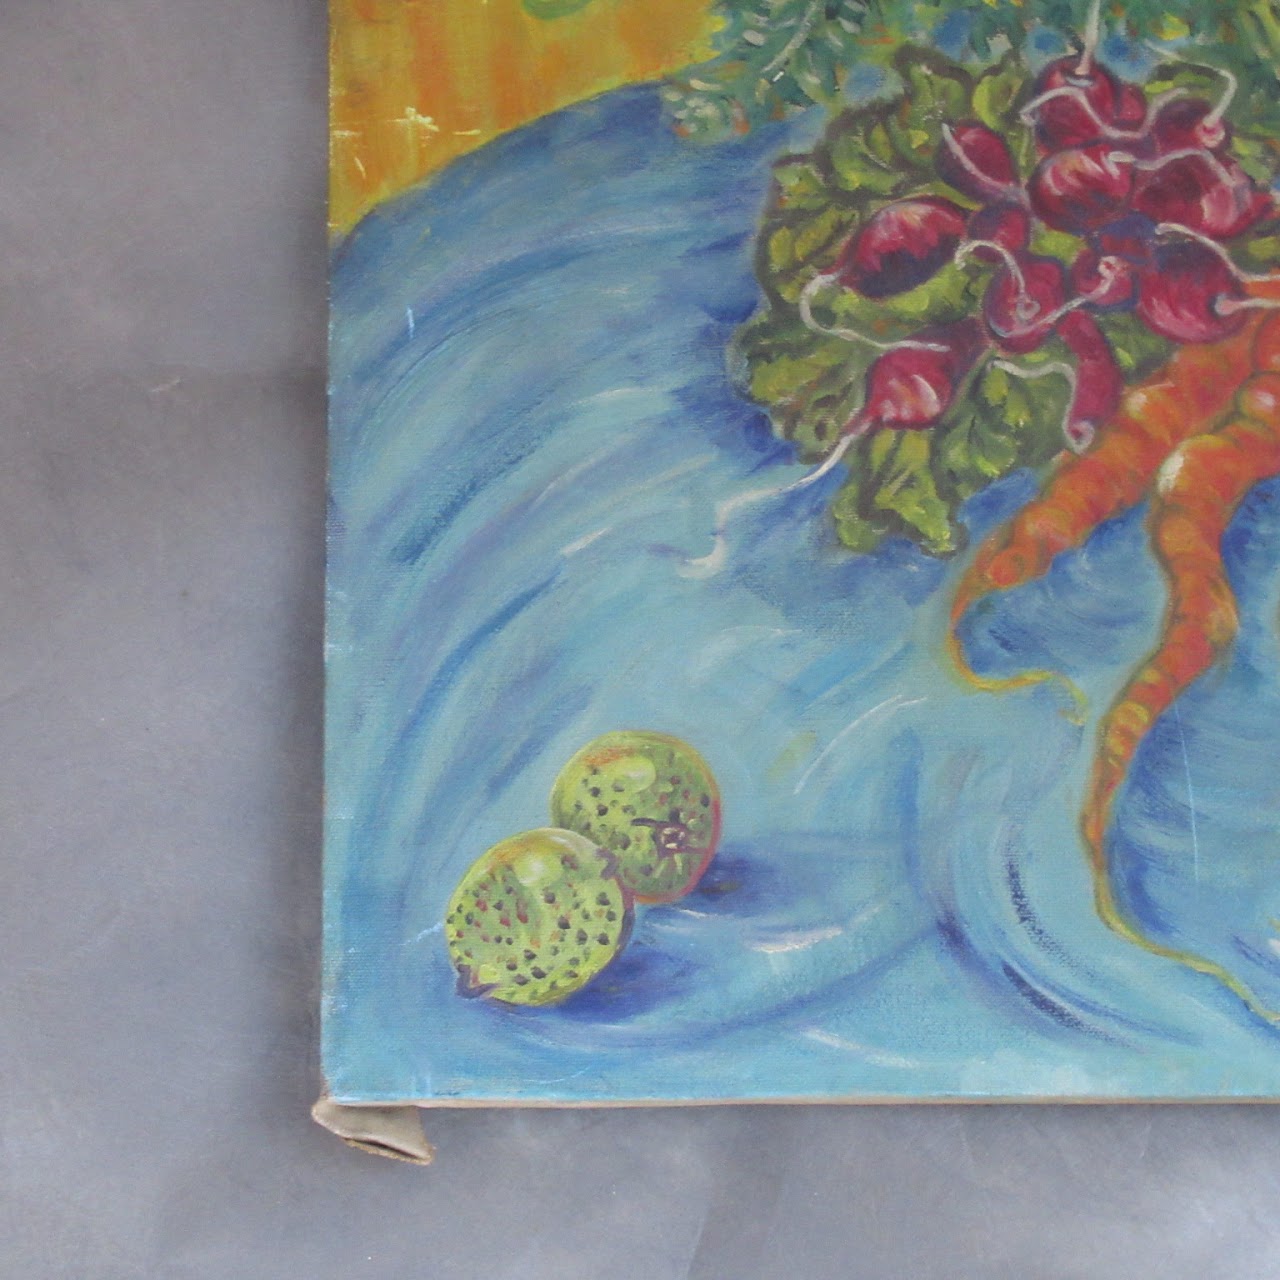 Myrna Sheffield Signed Vegetable Still Life Oil Painting